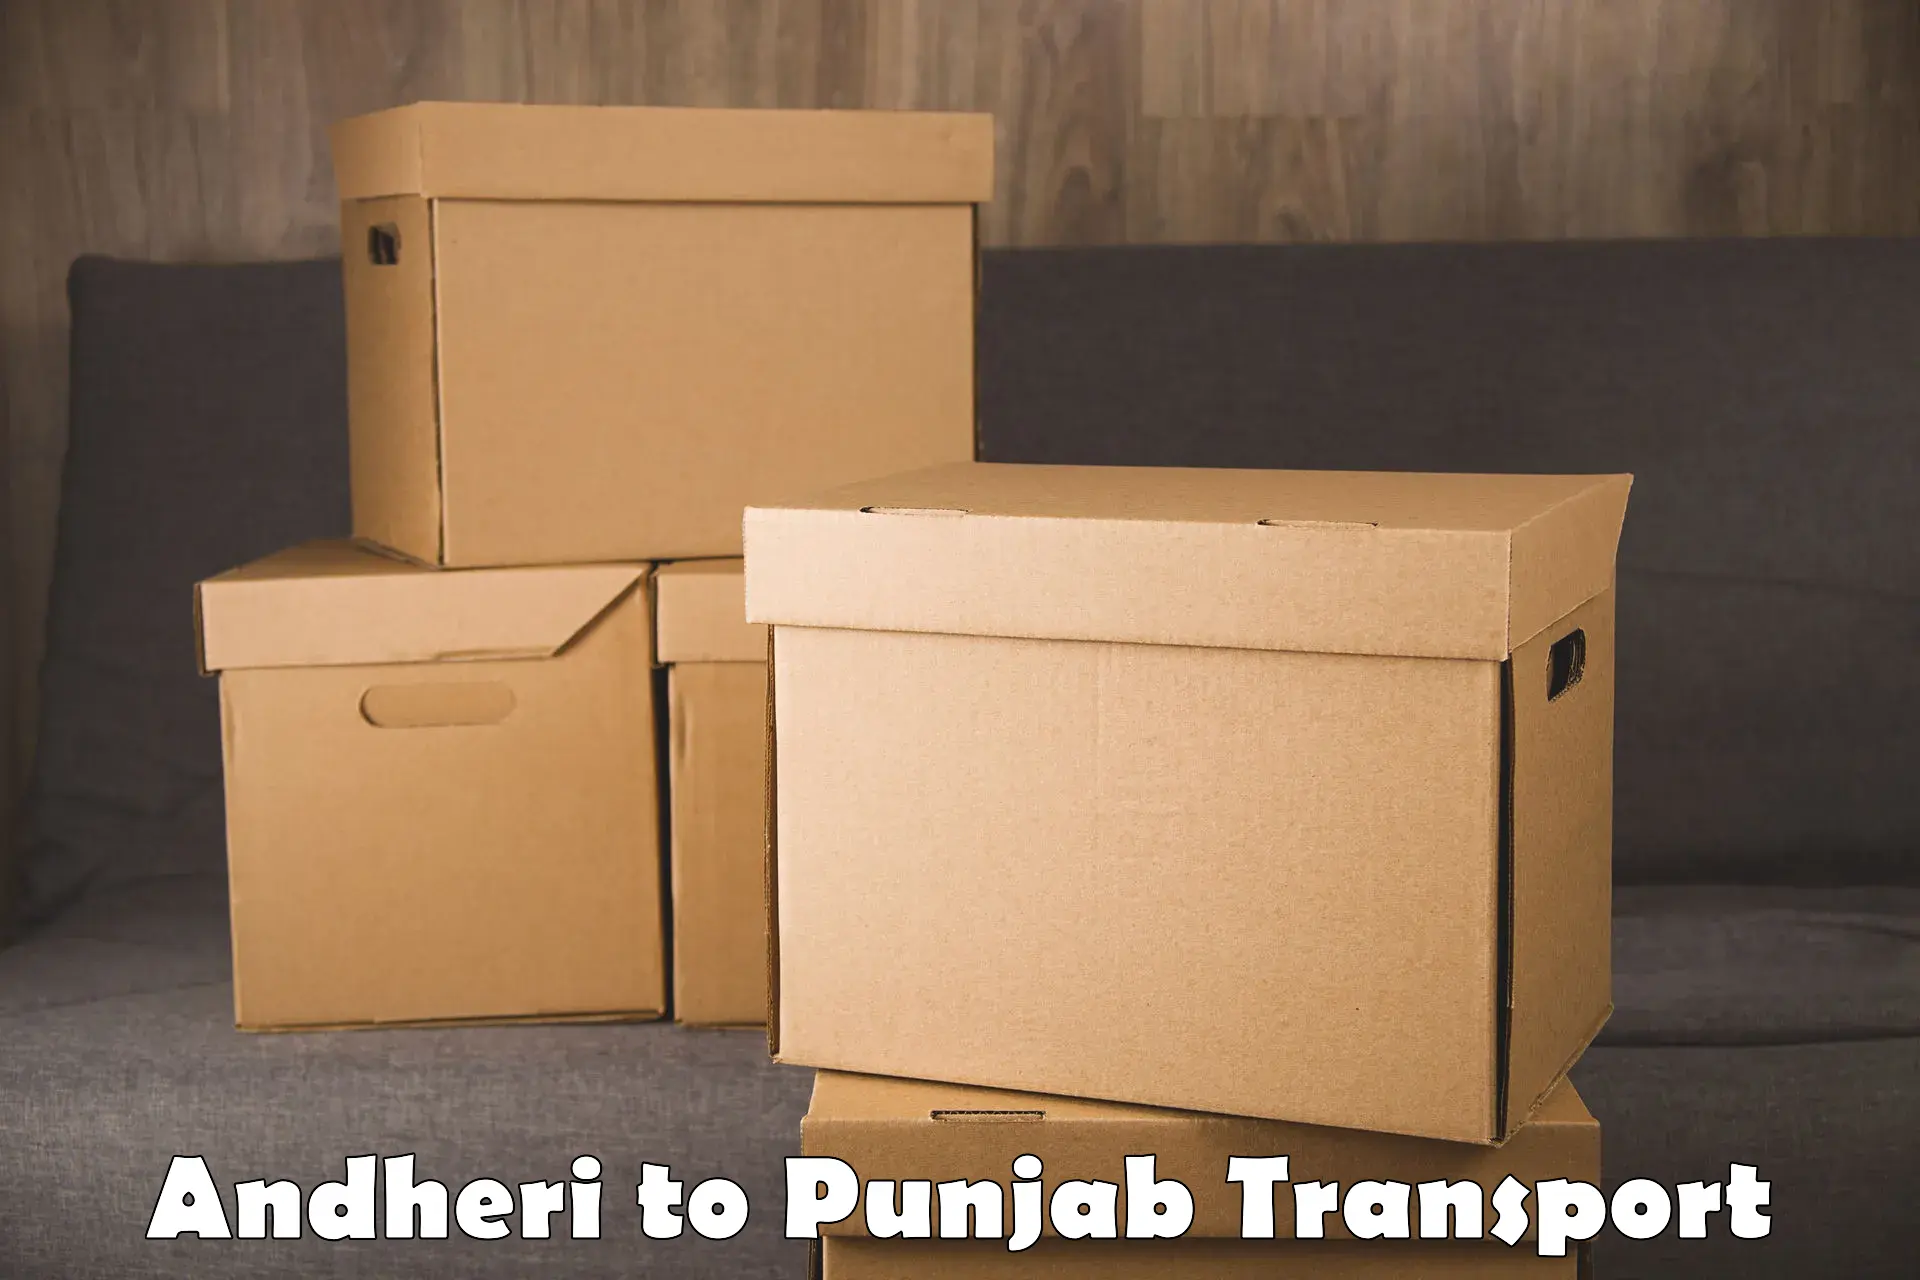 Furniture transport service in Andheri to Punjab